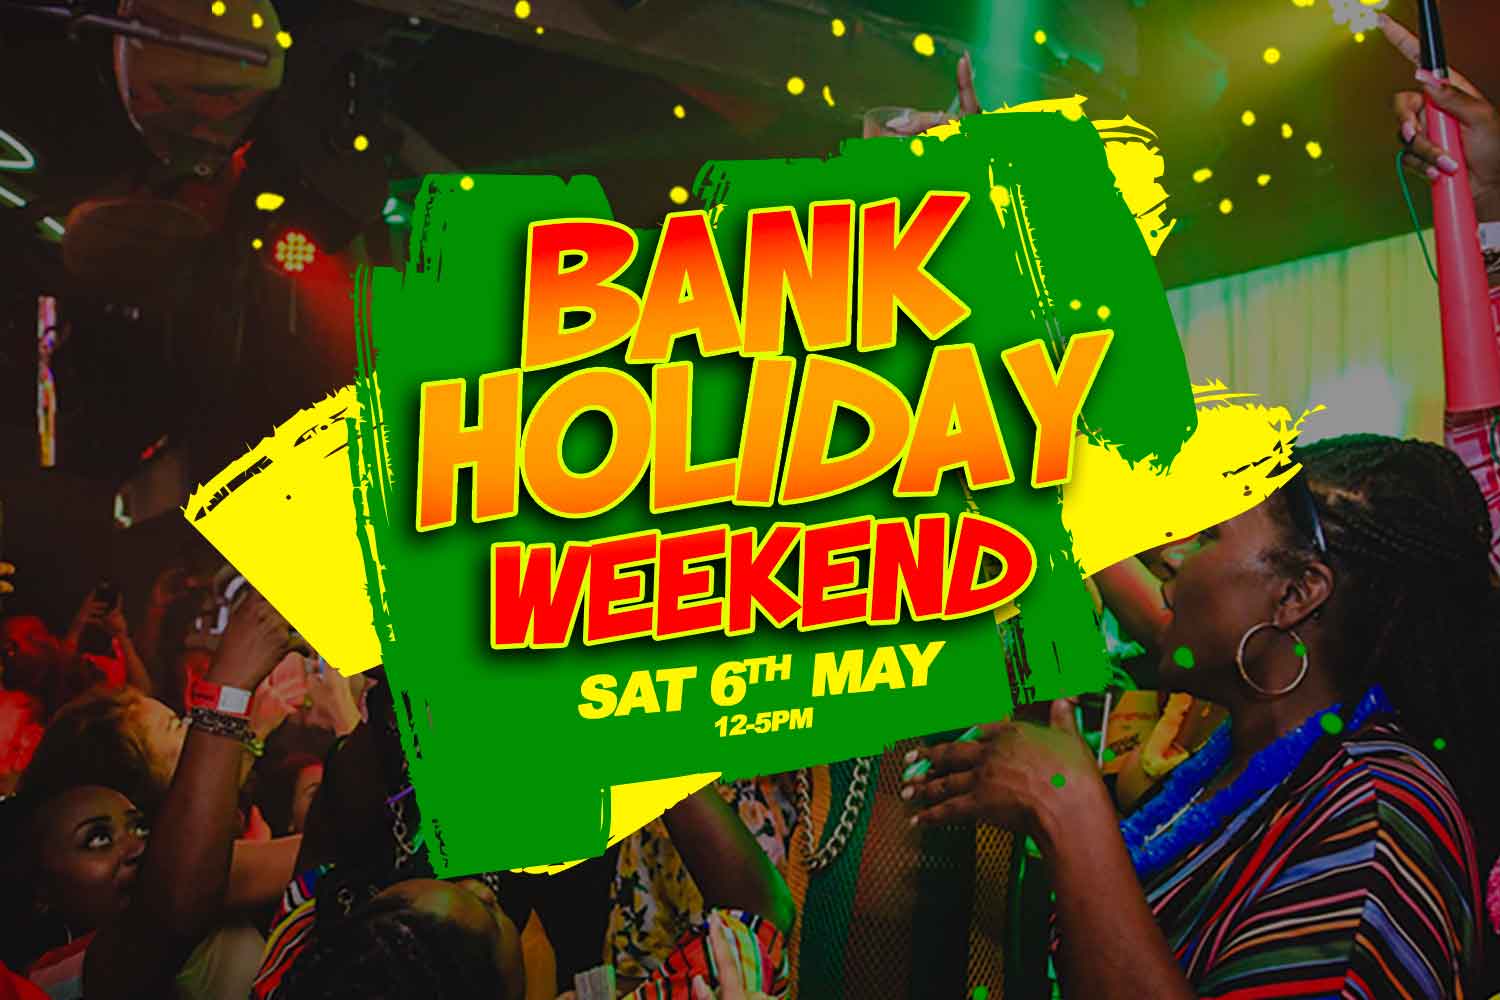 Sat, 6th May | Bank Holiday